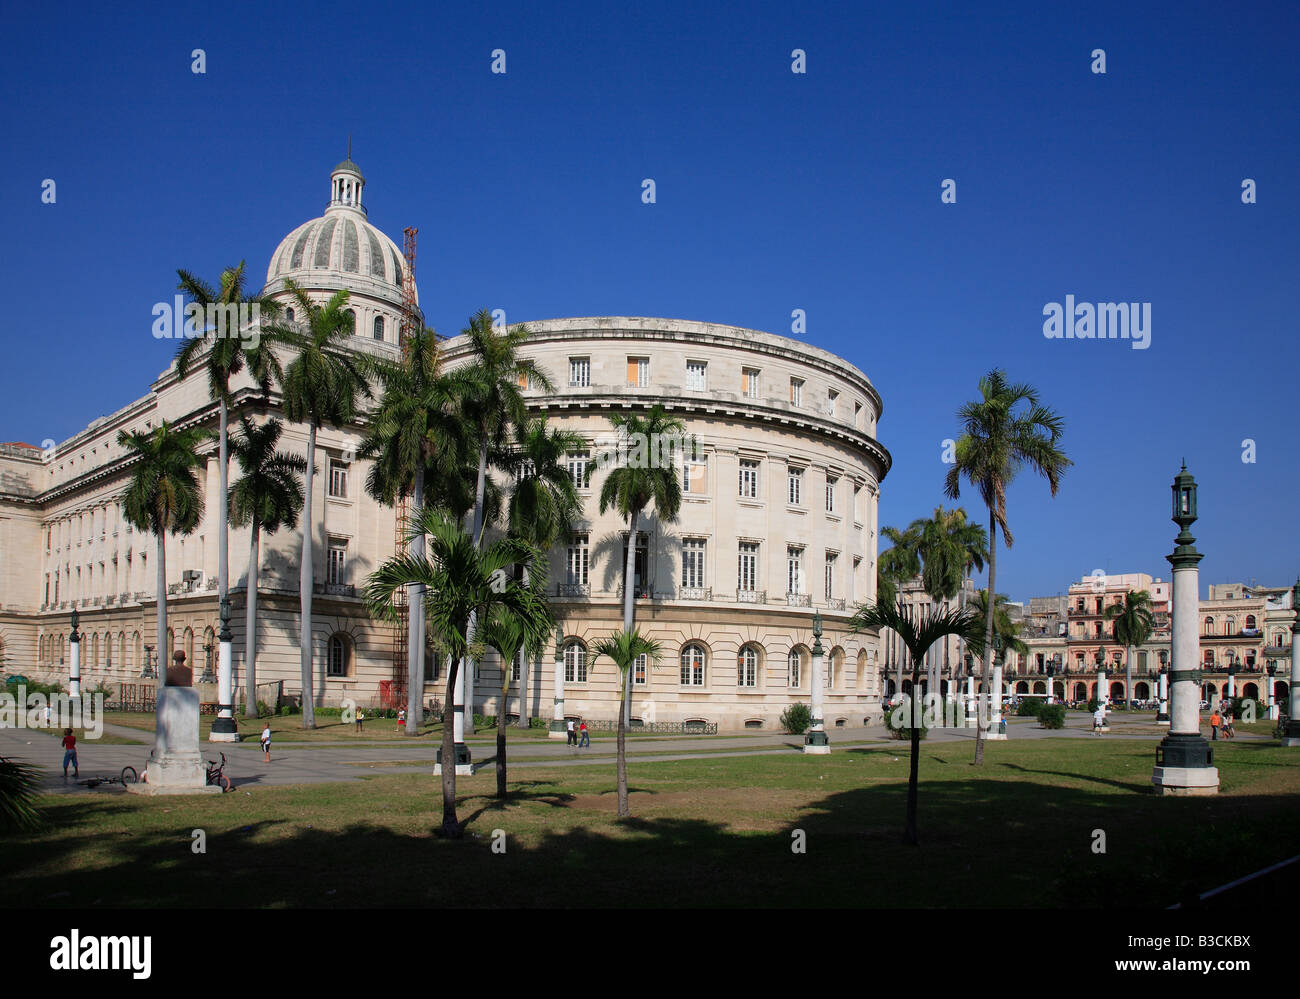 El Capitolio oder das National Capitol Building in Havanna Kuba war der Sitz der Regierung in Kuba bis nach der kubanischen Revolution Stockfoto